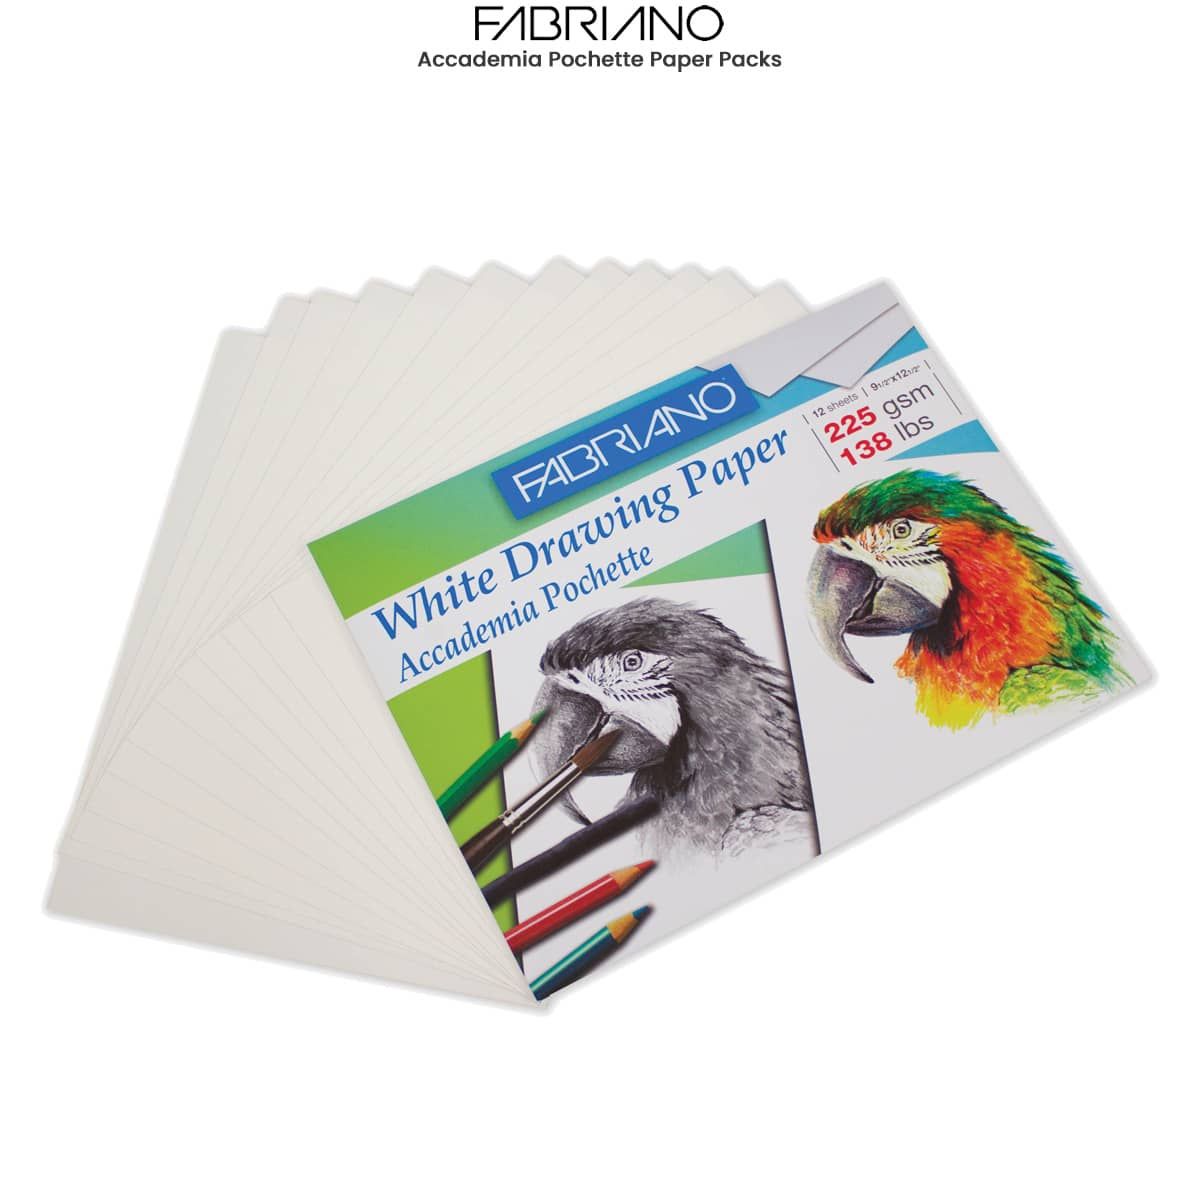 Fabriano Accademia Pochette Paper Packs